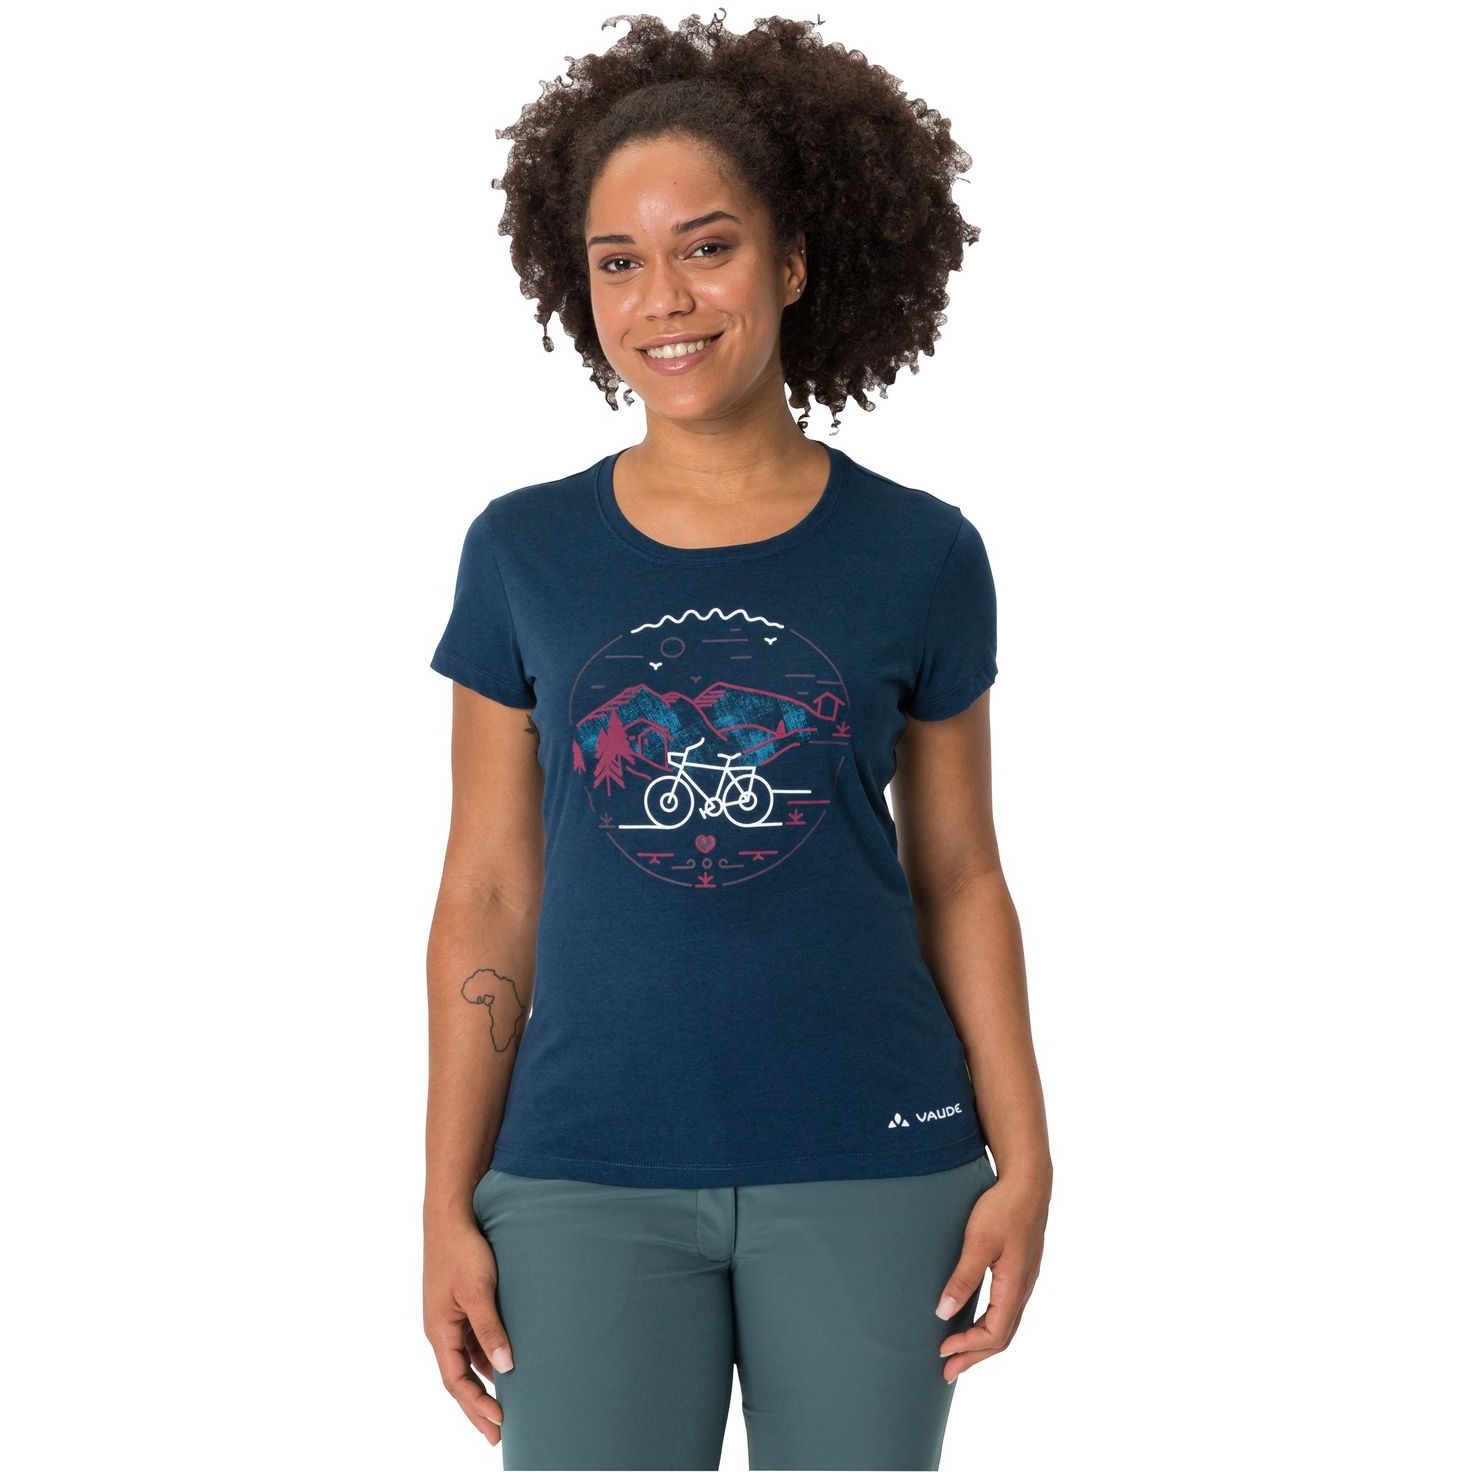 Produktbild von Vaude Cyclist V T-Shirt Damen - dark sea